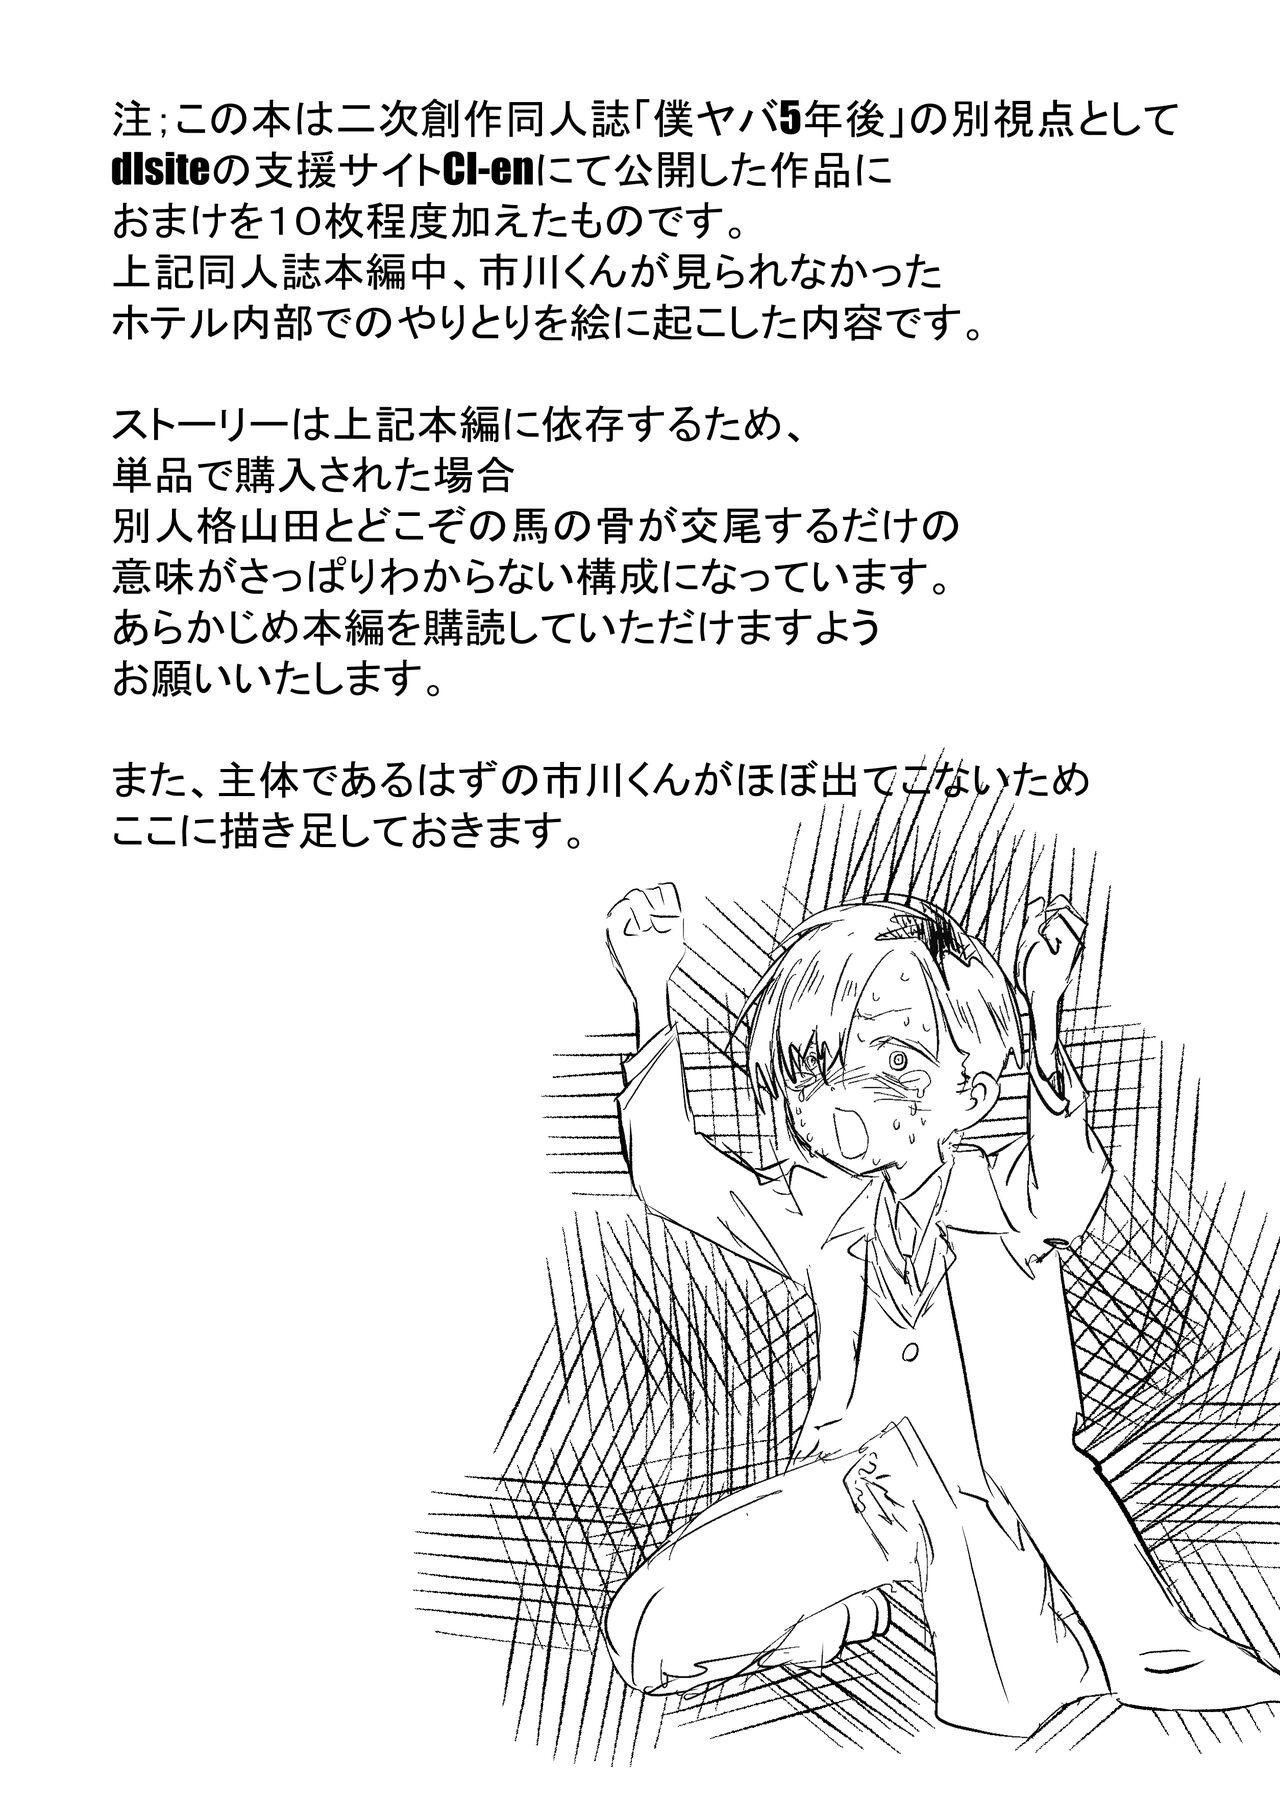 Punish 僕ヤバ5年後 差分まとめ - Boku no kokoro no yabai yatsu Anime - Page 2